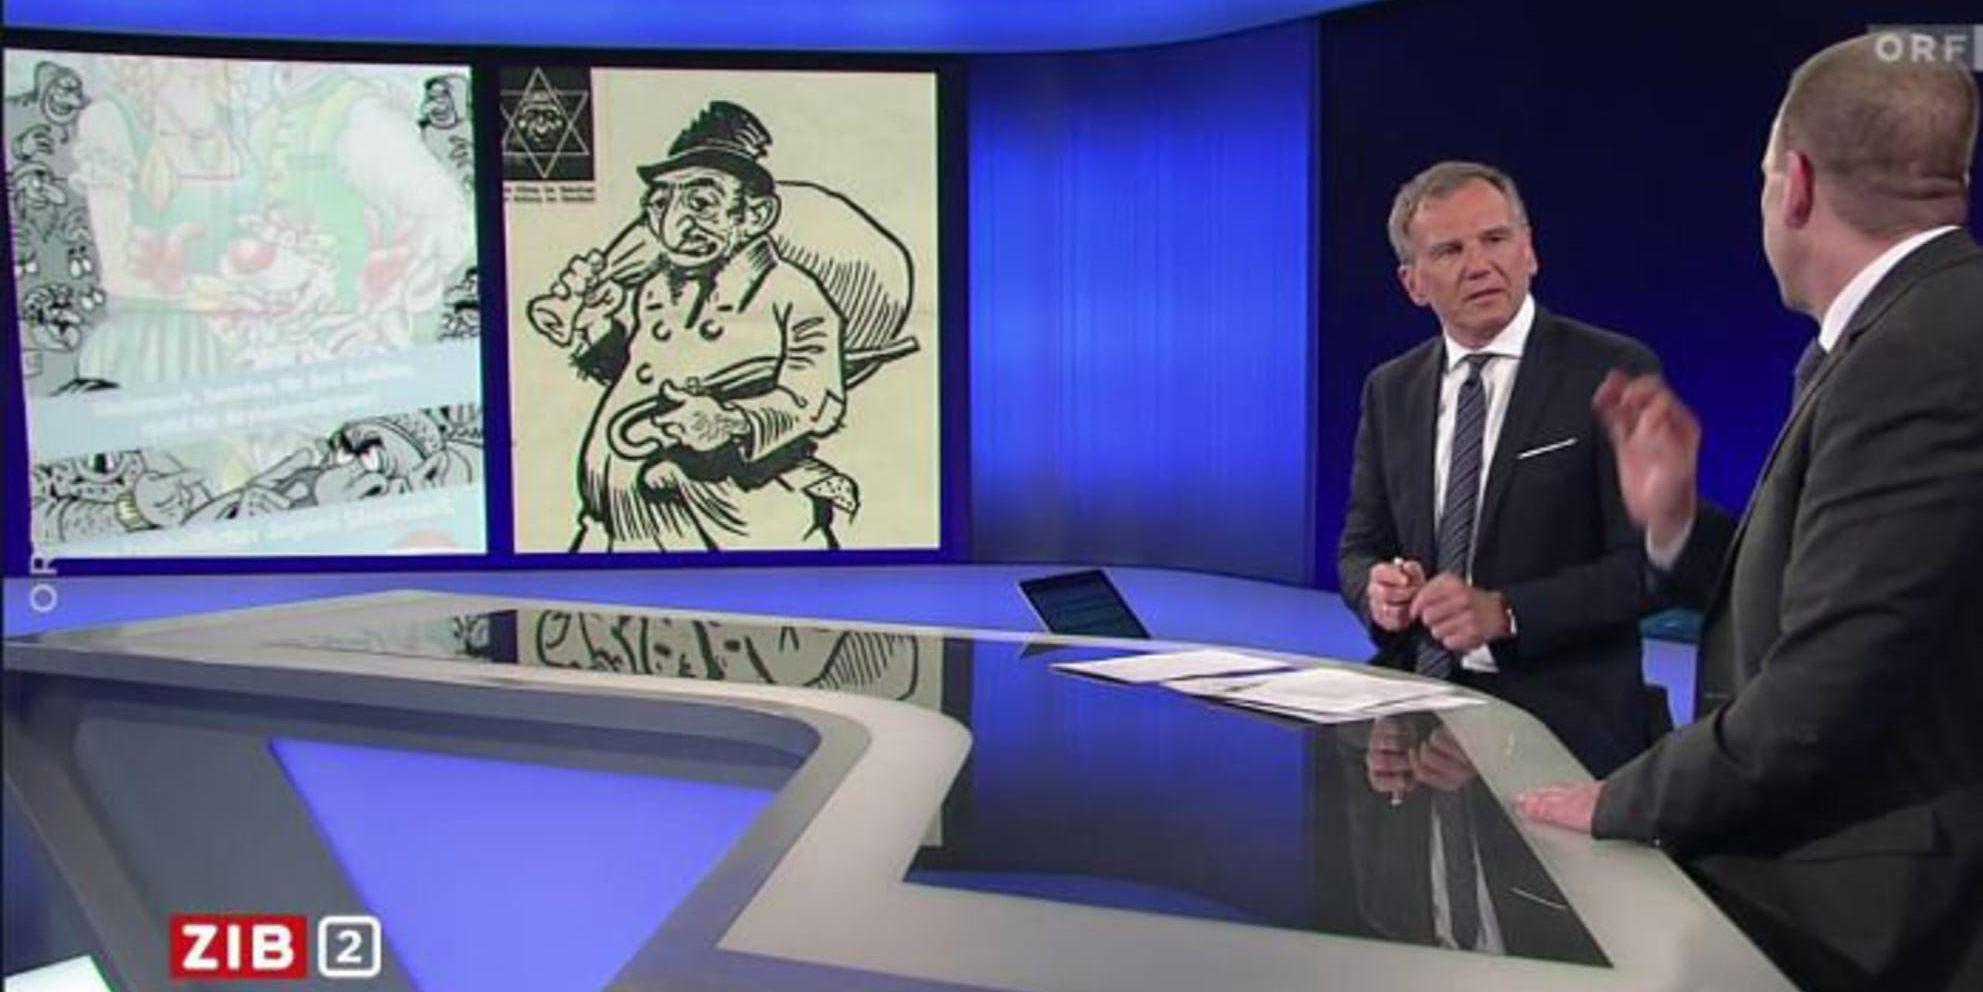 Den österrikiske programledaren Armin Wolf jämförde en karikatyrteckning från FPÖ:s ungdomsförbund med propaganda från Nazityskland.